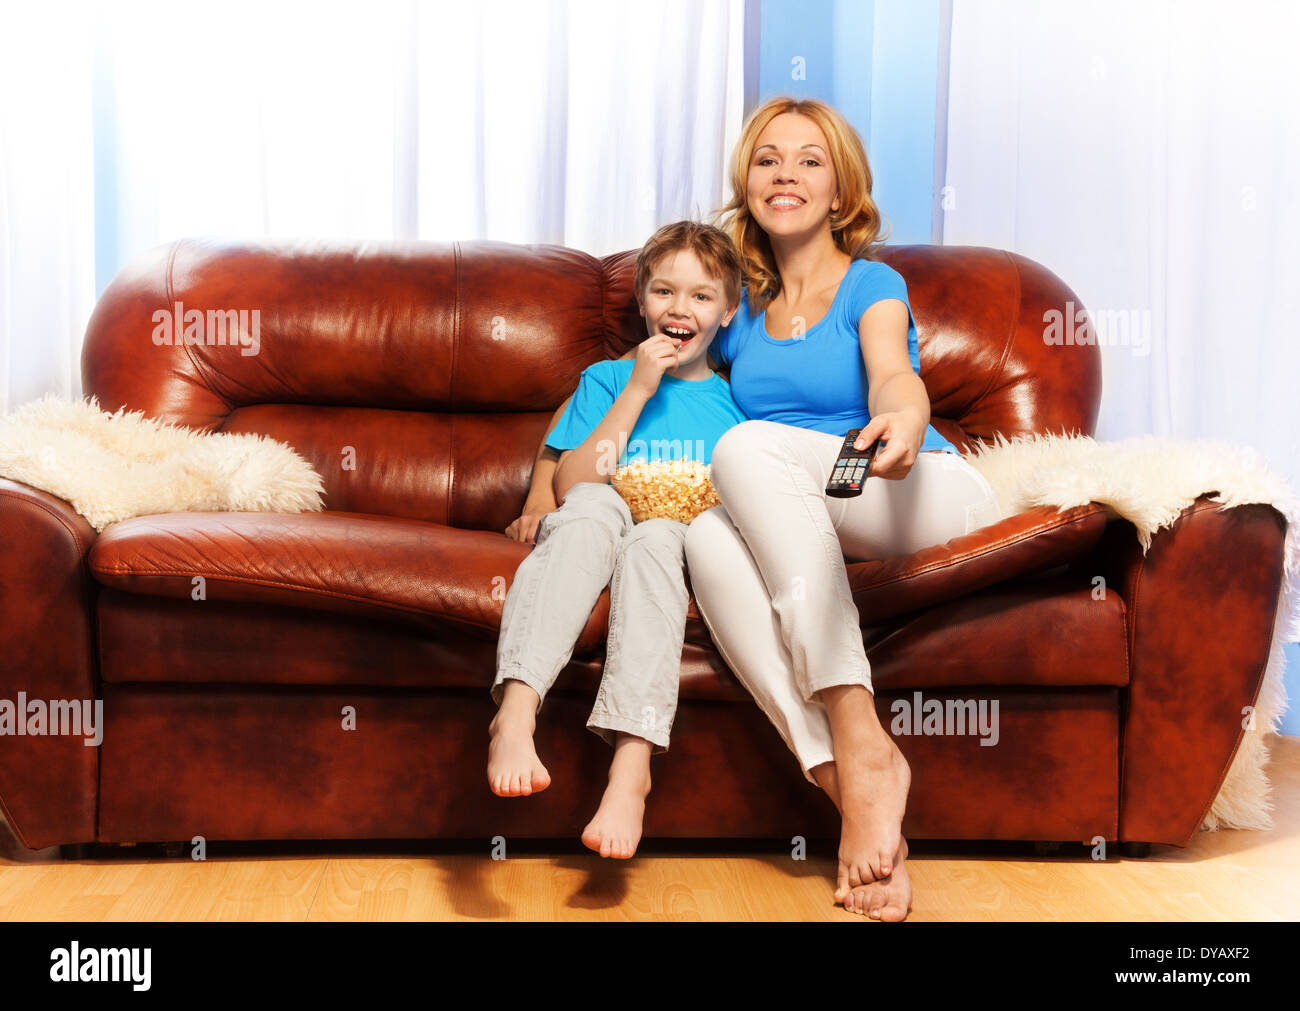 Мамаши на диване. Женщина с сыном на диване. Женщина с сыном на руках на диване. Мама с сыном смотрят ТВ. Мама с сыном на диване домашнее.